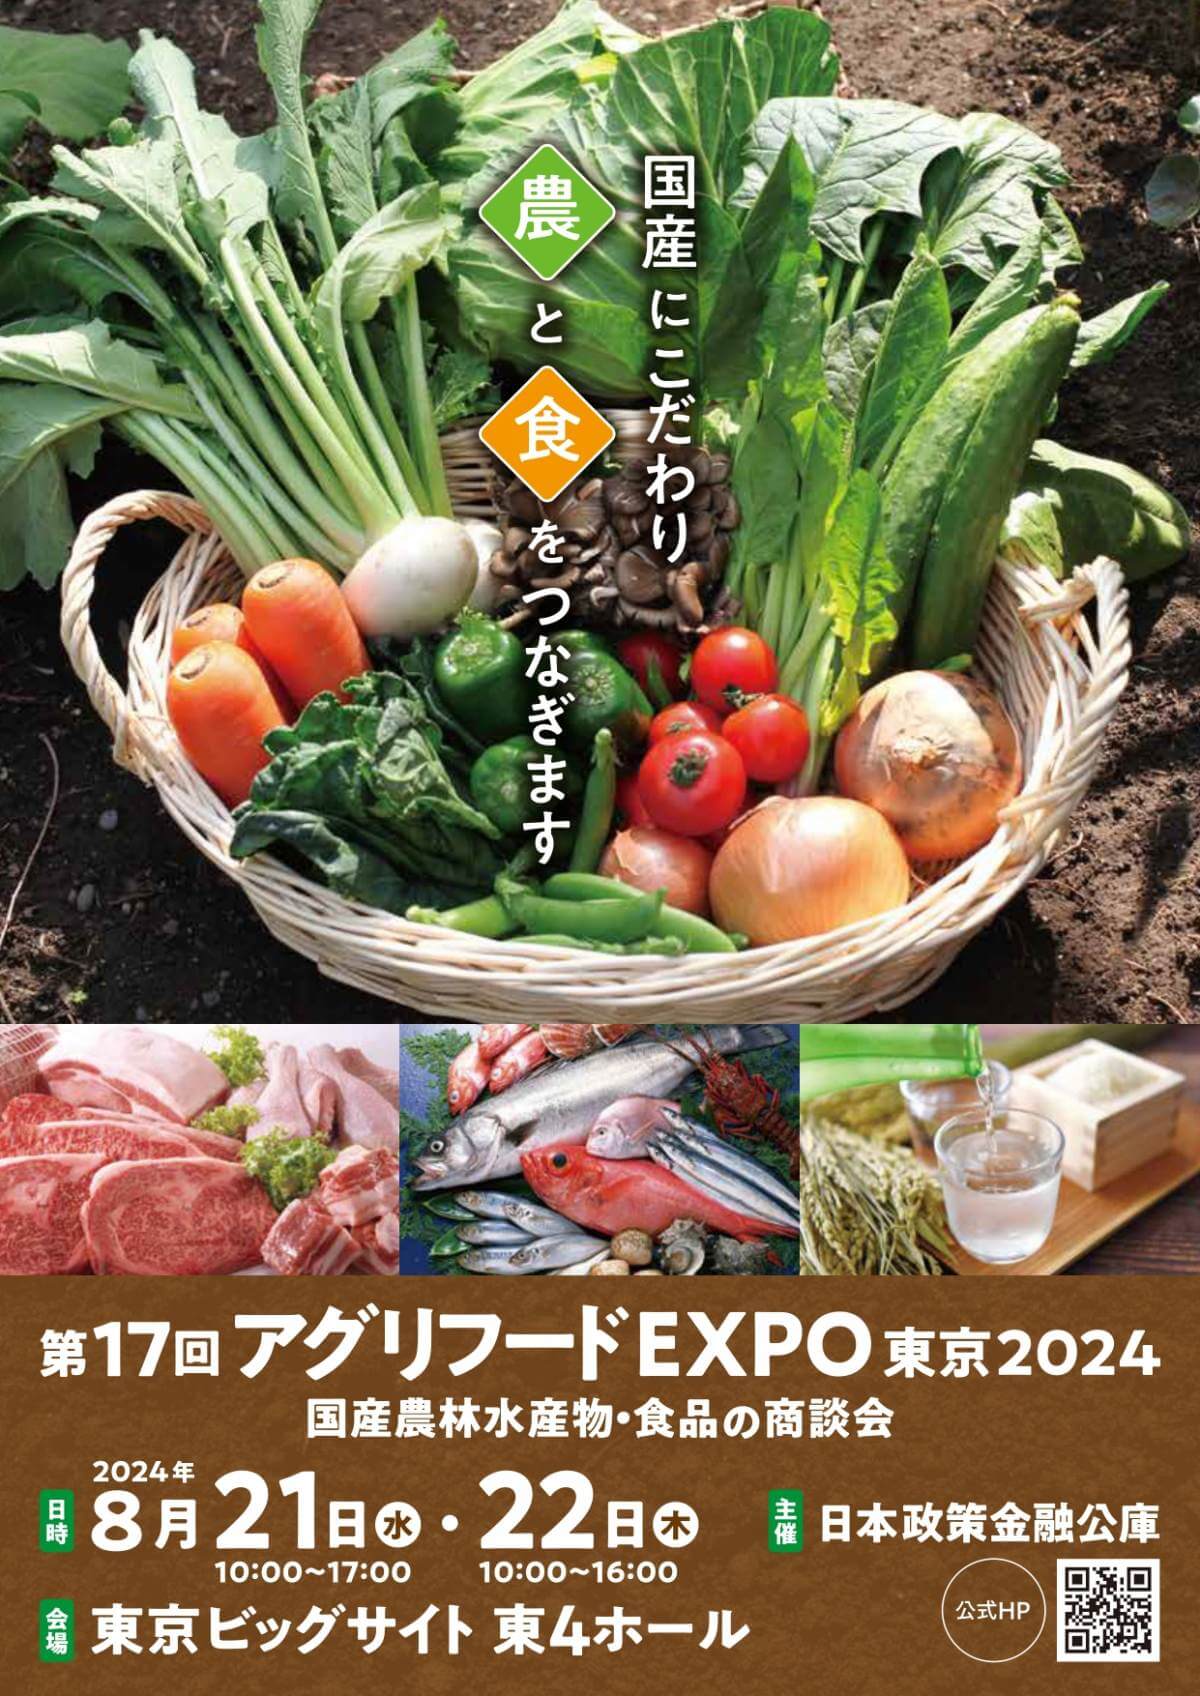 【締切4/19】第17回「アグリフードEXPO東京2024」出展者募集